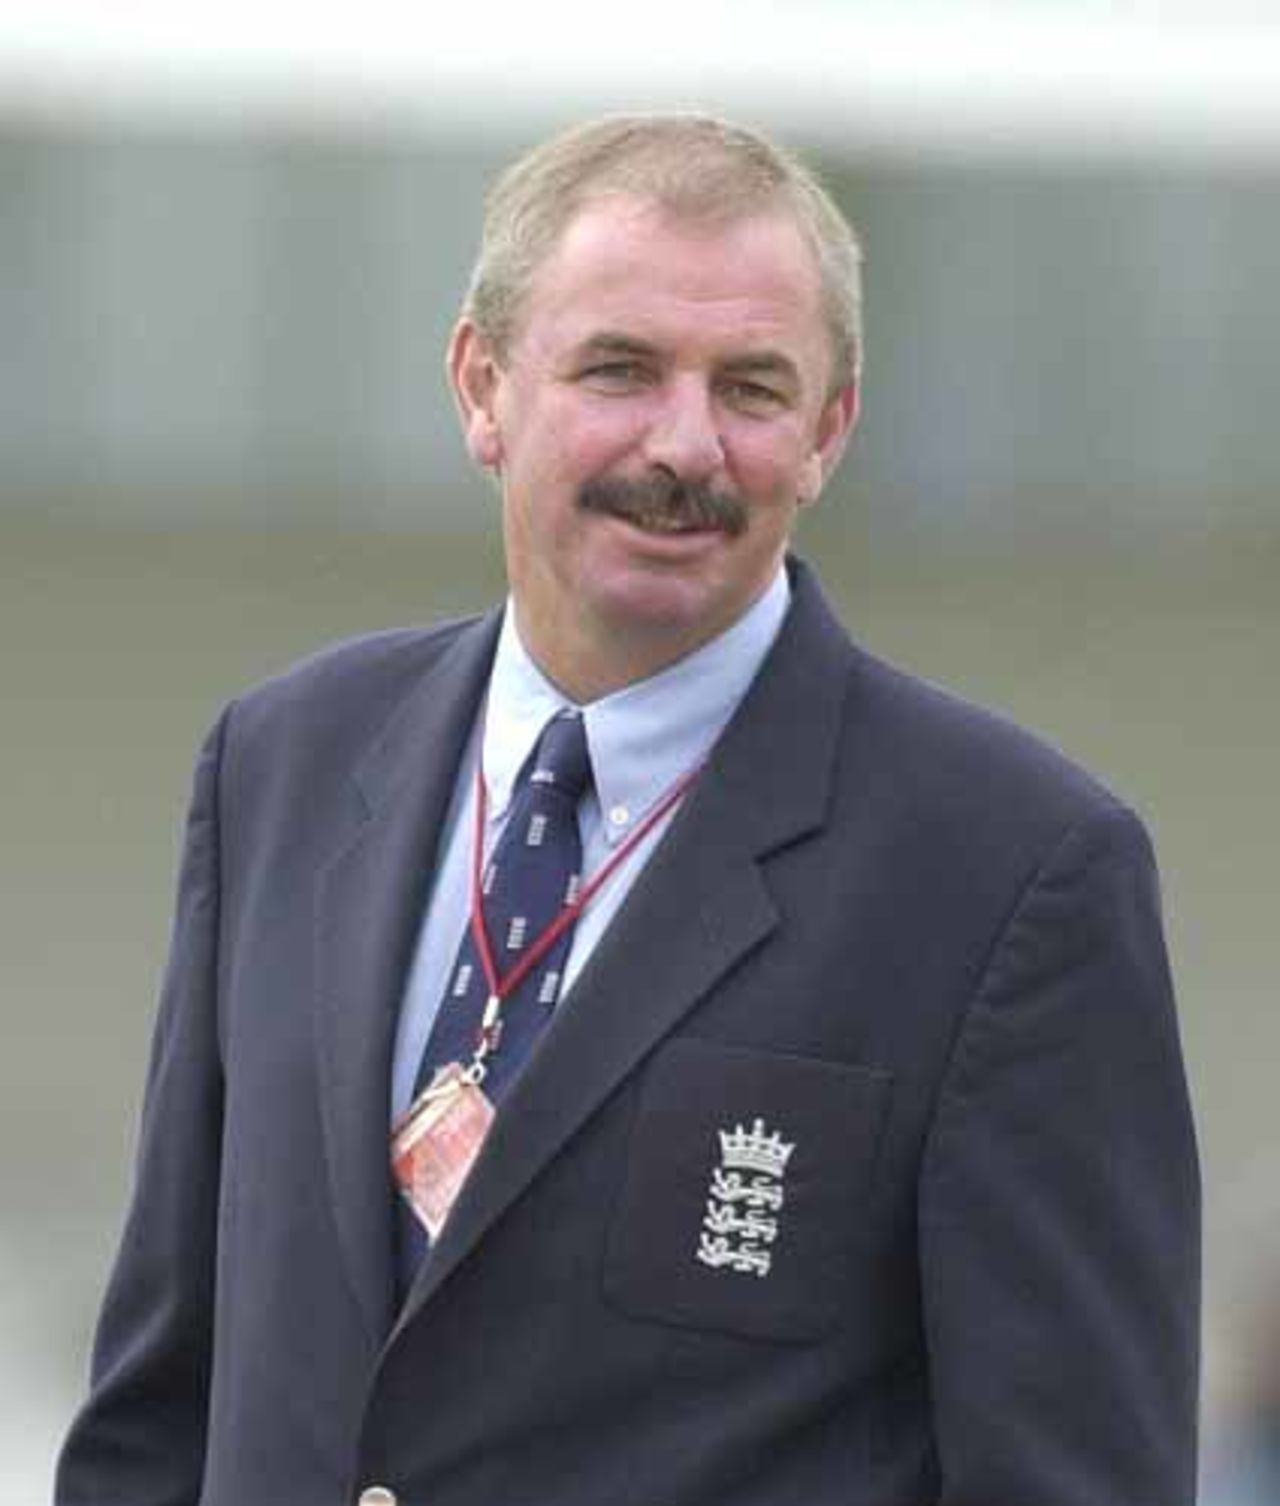 England v Australia, 3rd Ashes Test, 2-4 August 2001, Trent Bridge Nottingham